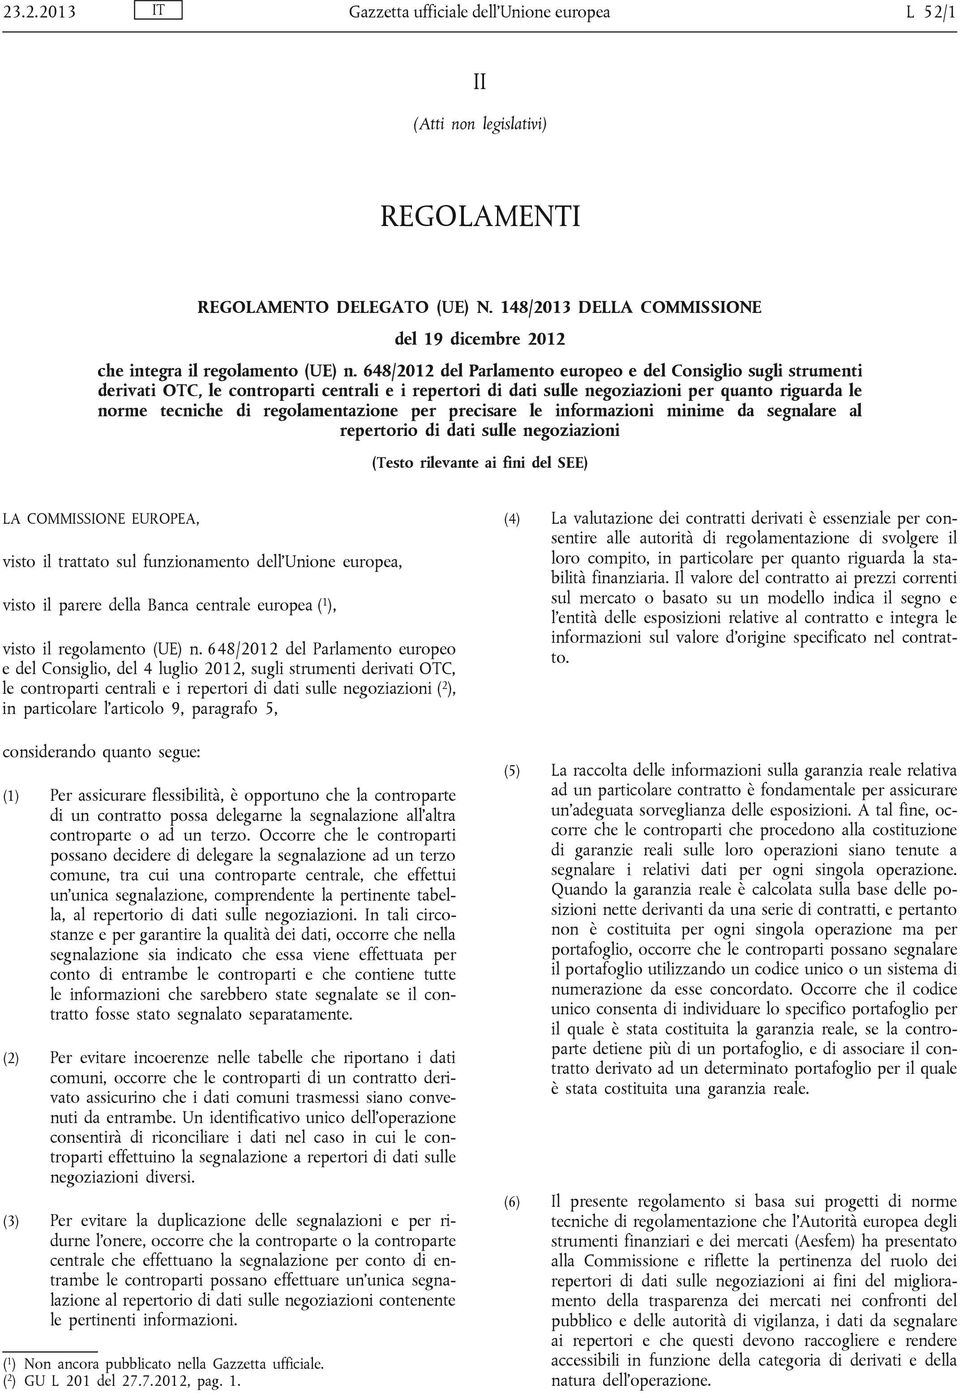 648/2012 del Parlamento europeo e del Consiglio sugli strumenti derivati OTC, le controparti centrali e i repertori di dati sulle negoziazioni per quanto riguarda le norme tecniche di